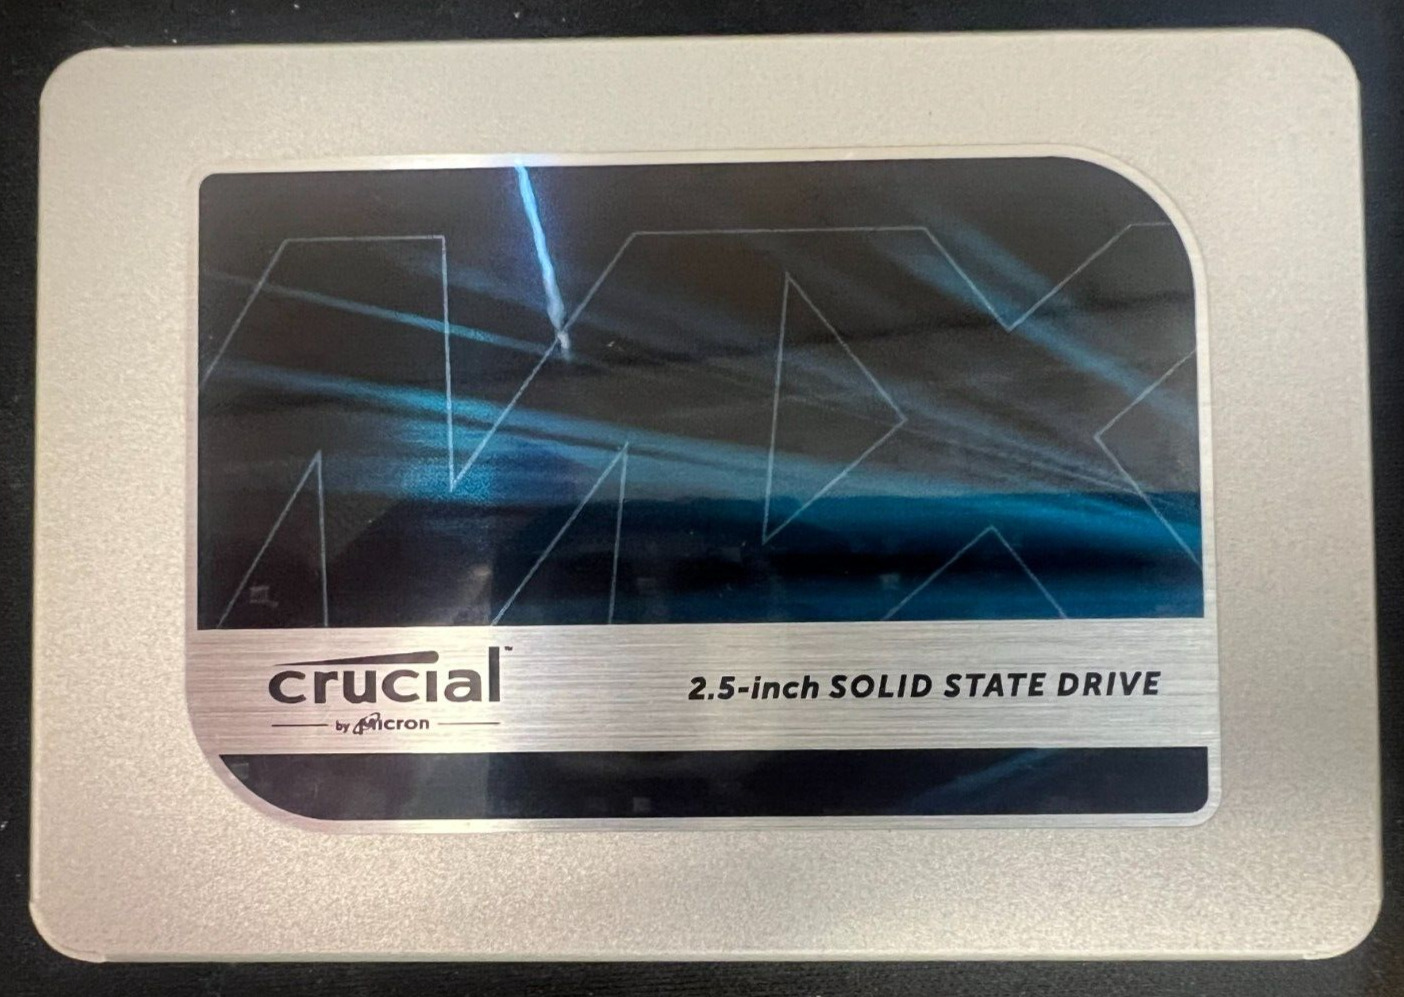 Cruicial MX500 250GB SSD, SATA, 2.5